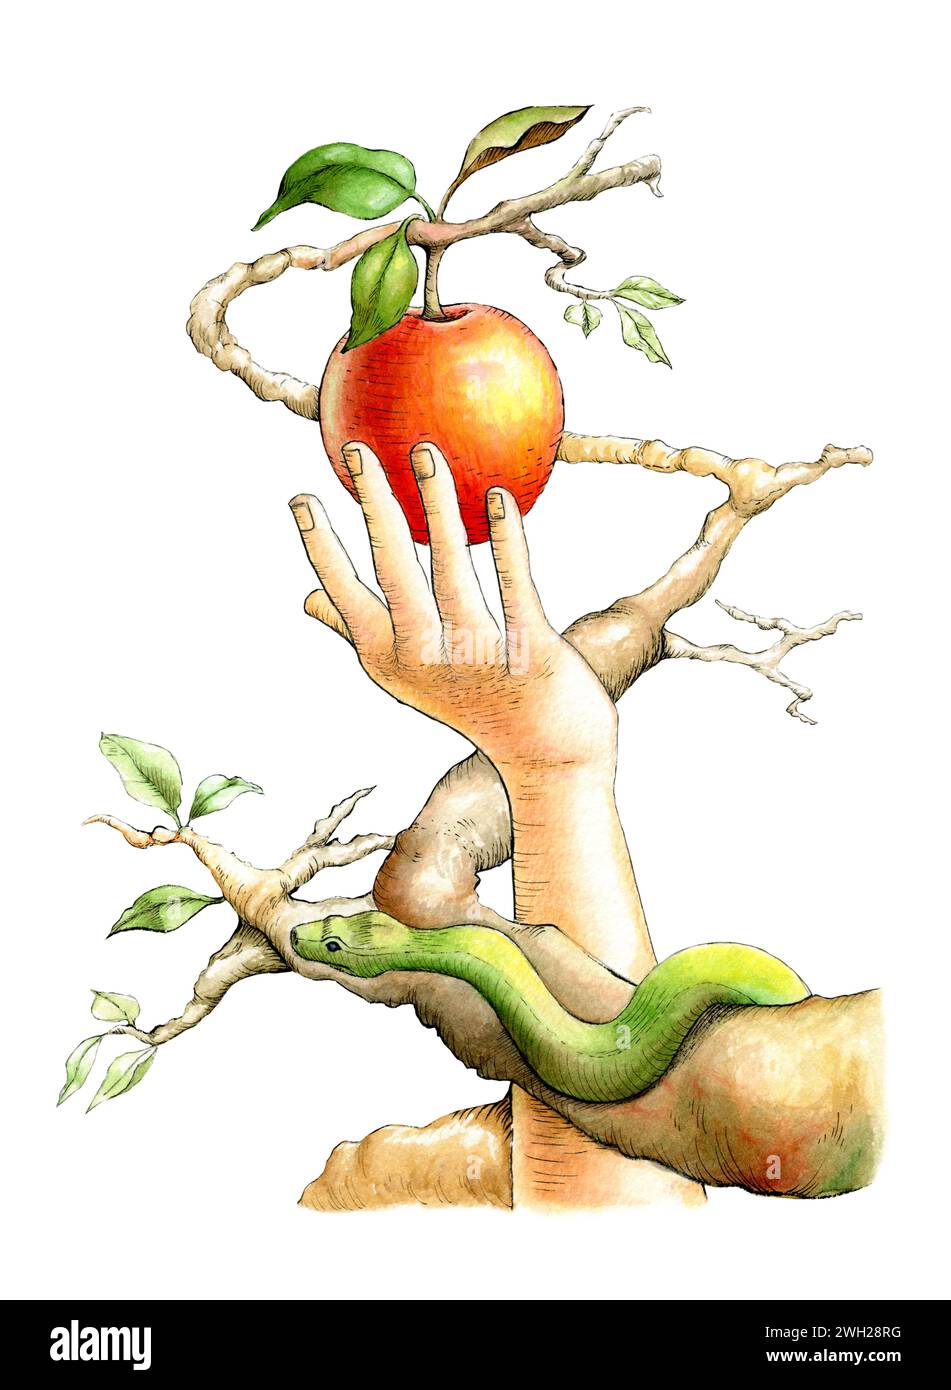 EVA ramassant le fruit défendu, tandis que le serpent la regarde d'une branche. Illustration traditionnelle sur papier. Banque D'Images